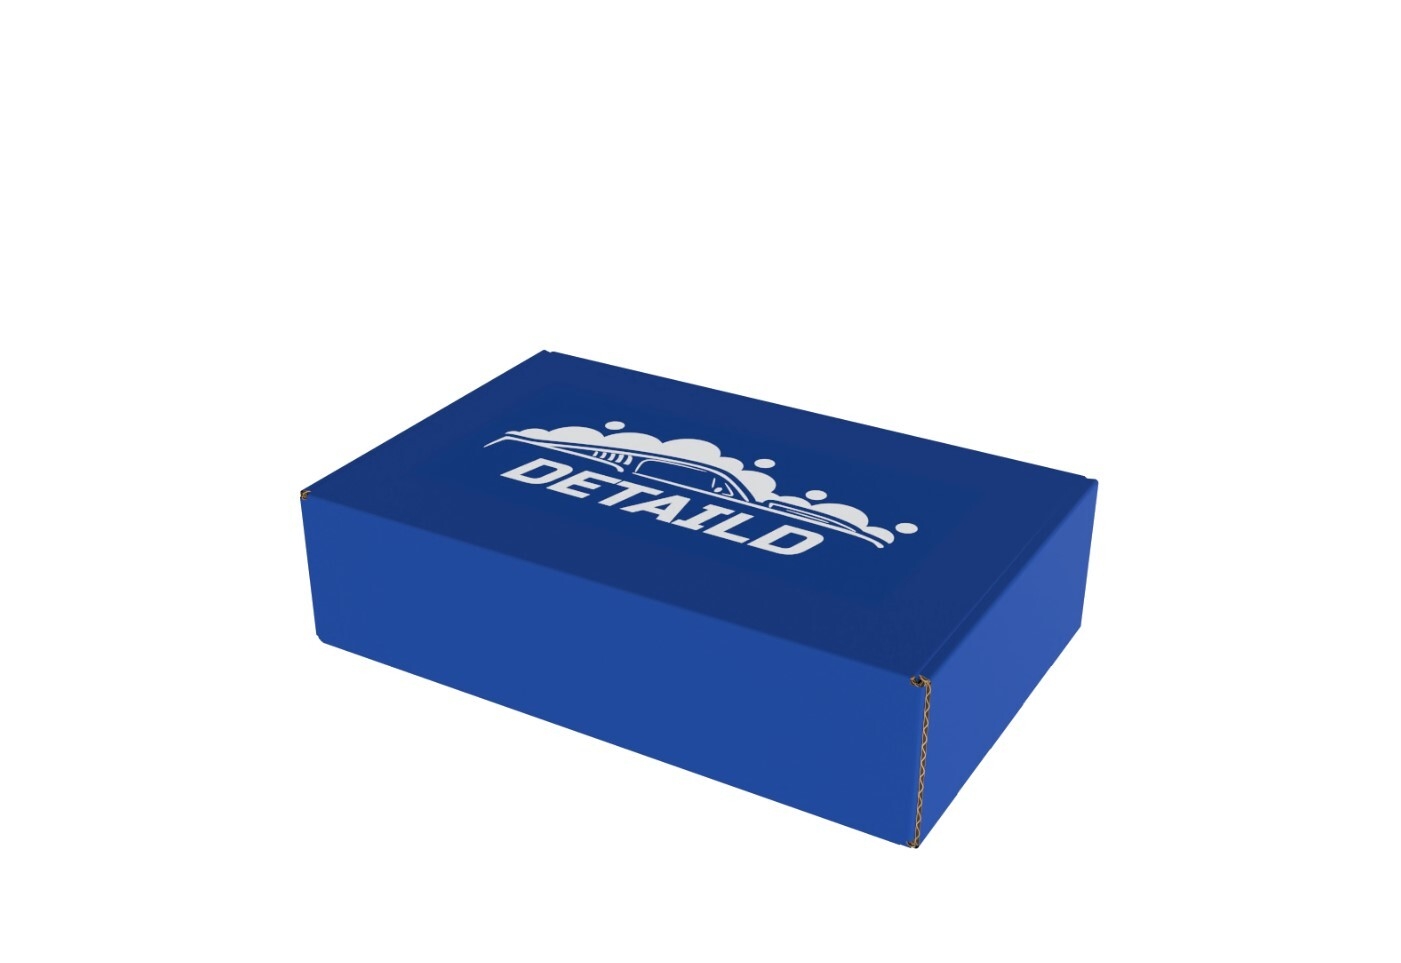 a blue box